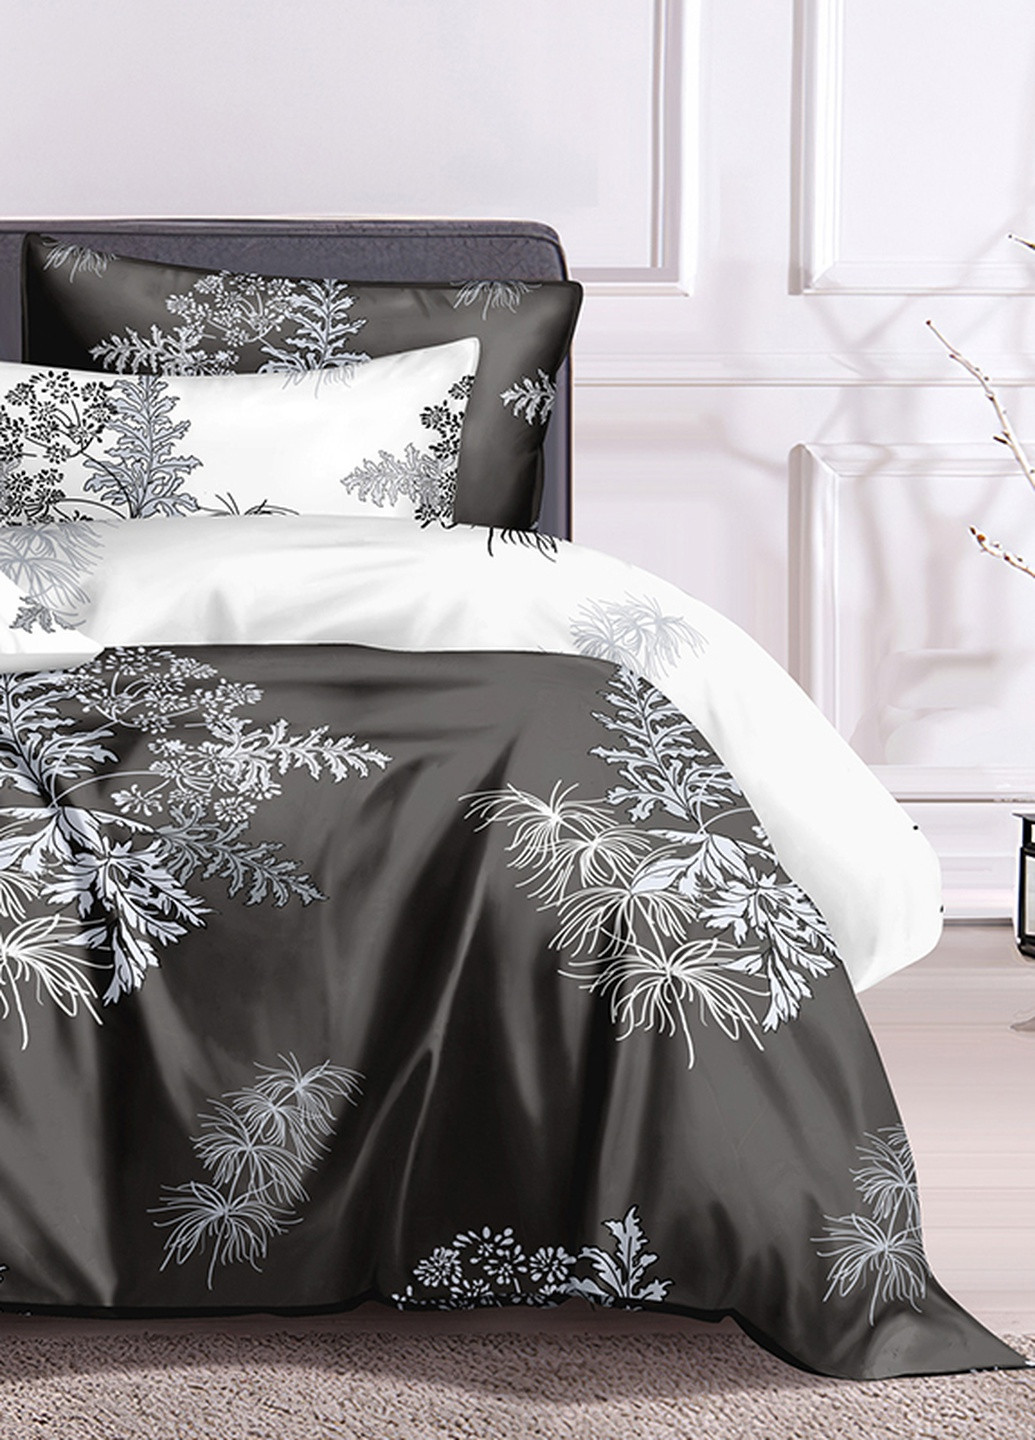 Хлопковое постельное белье White plants с сатиновым плетением Двуспальный евро комплект SoundSleep (224156374)